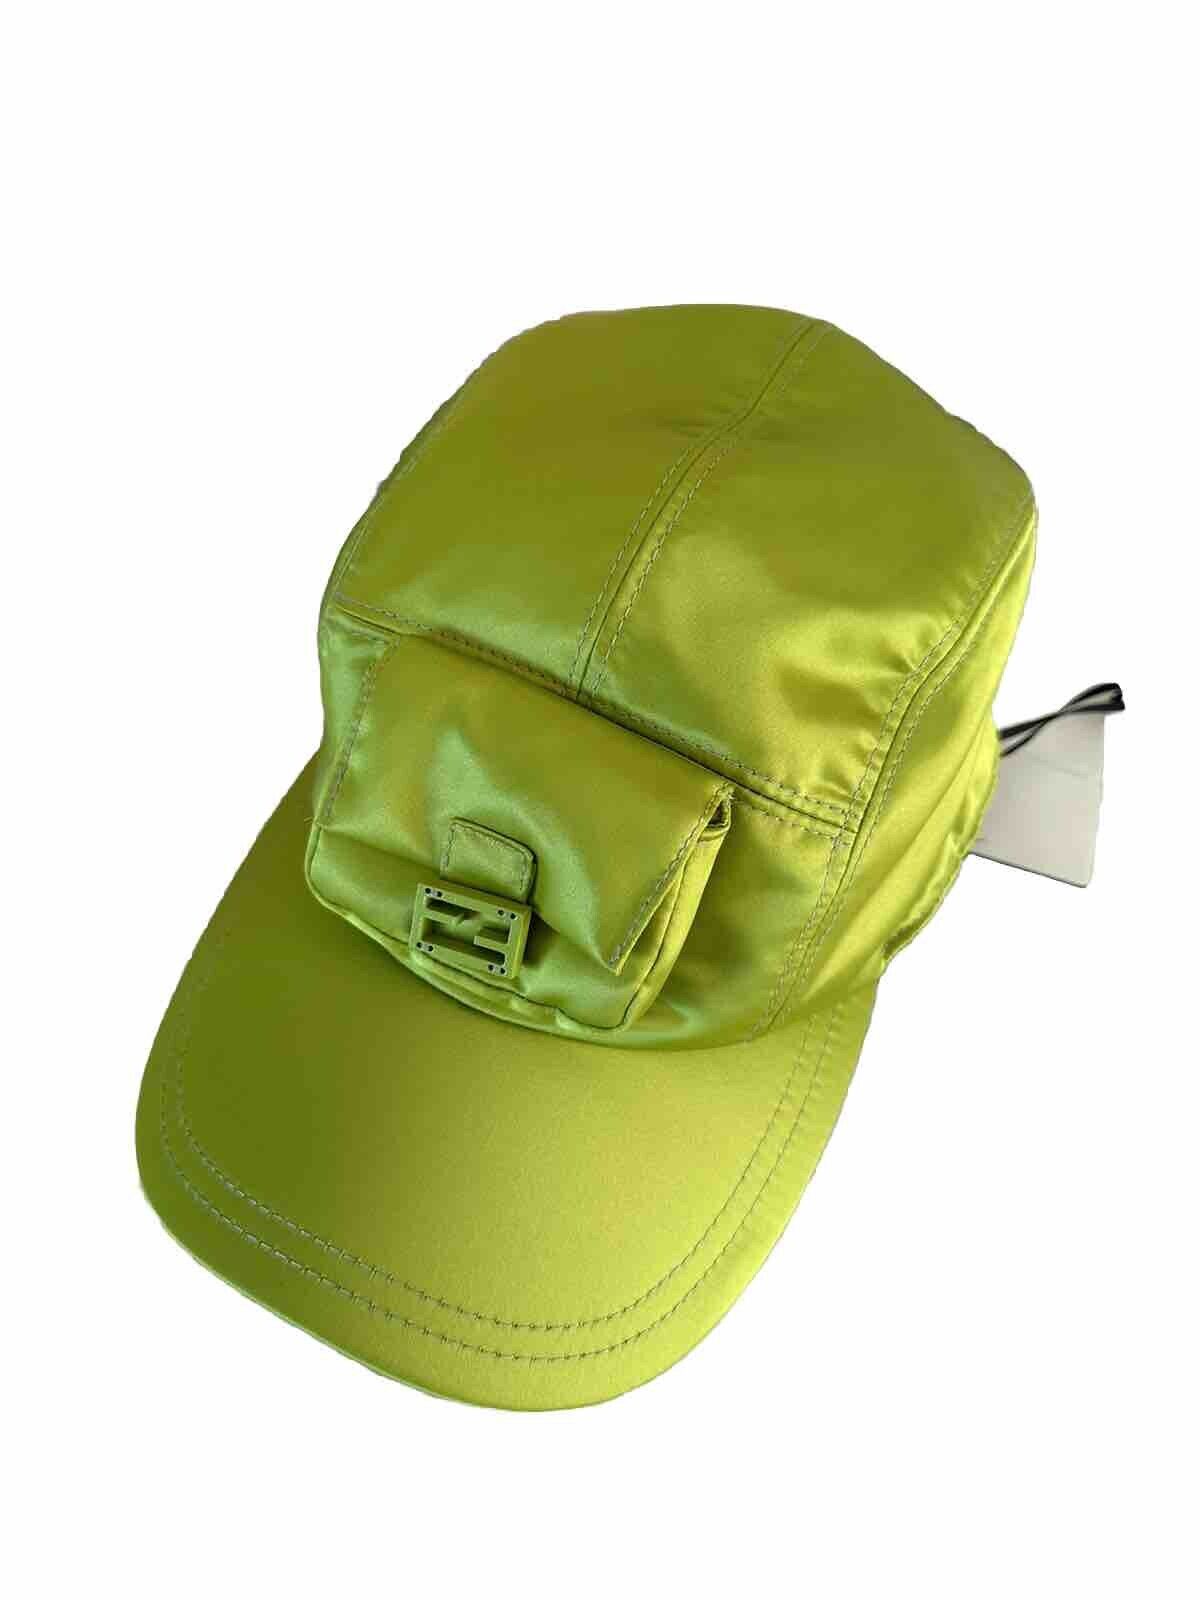 NWT $920 Fendi Nylon Baseball Cap Hat Wasabi One Size Italy